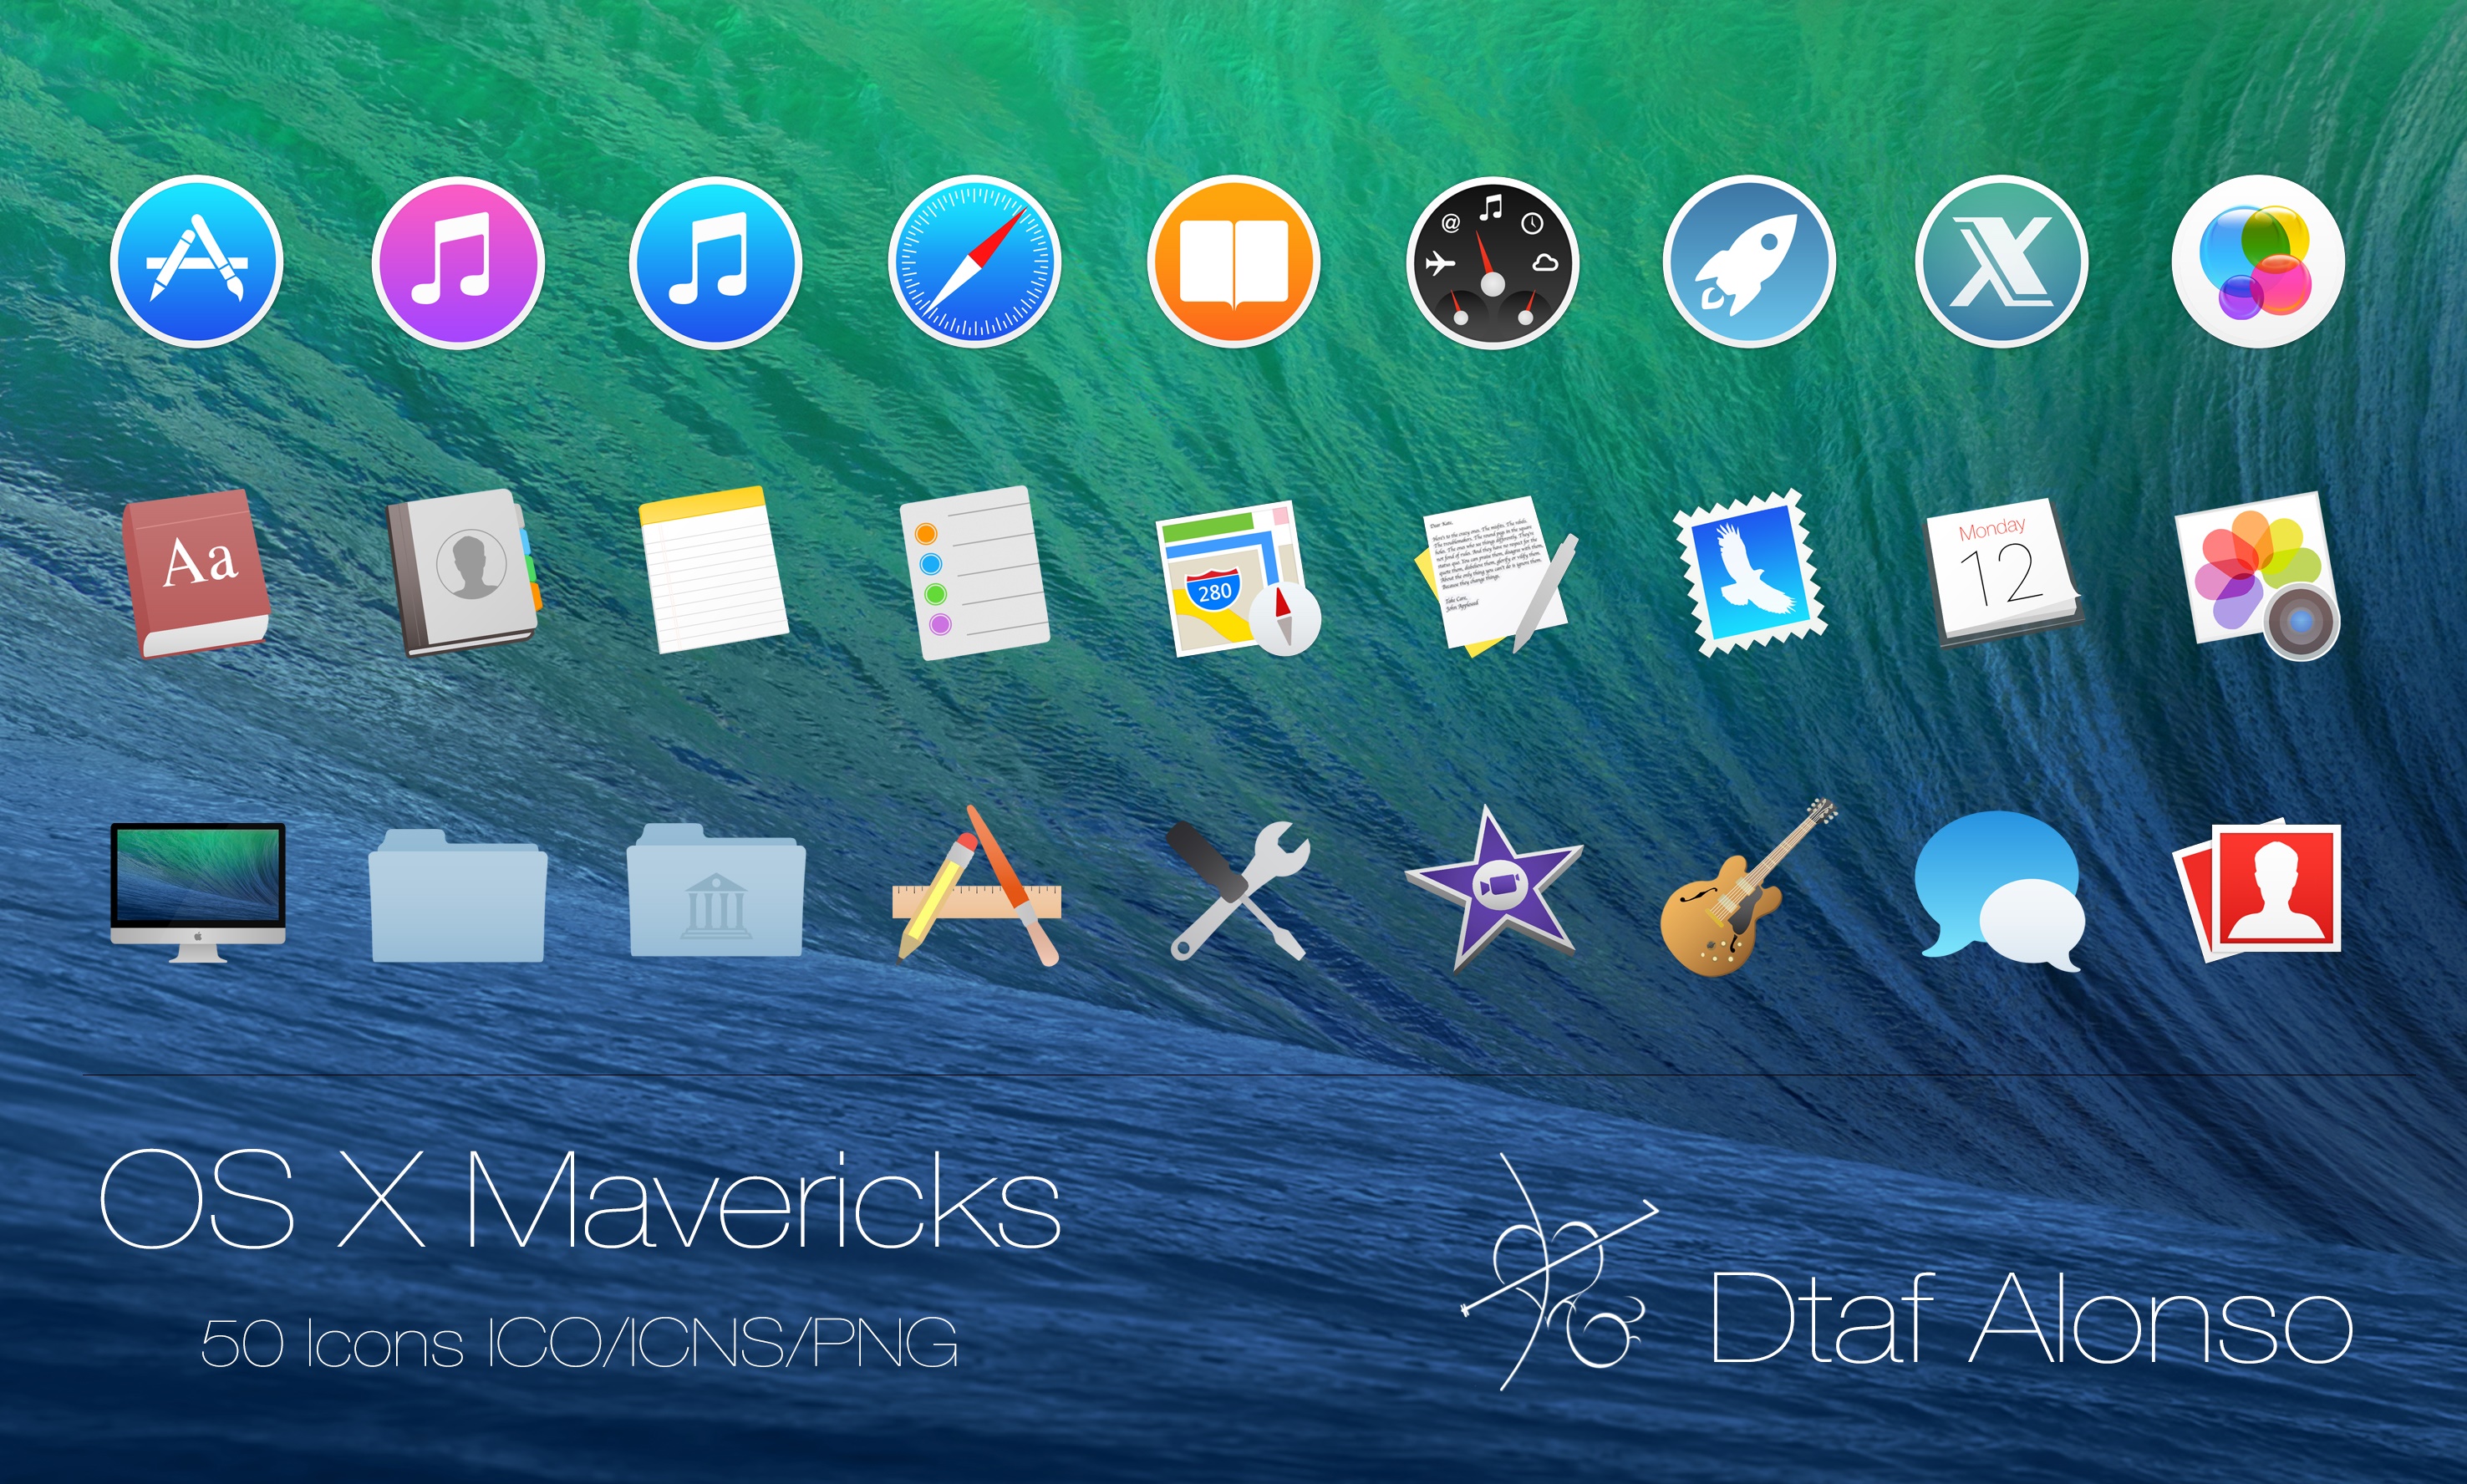 rocketdock mac icons